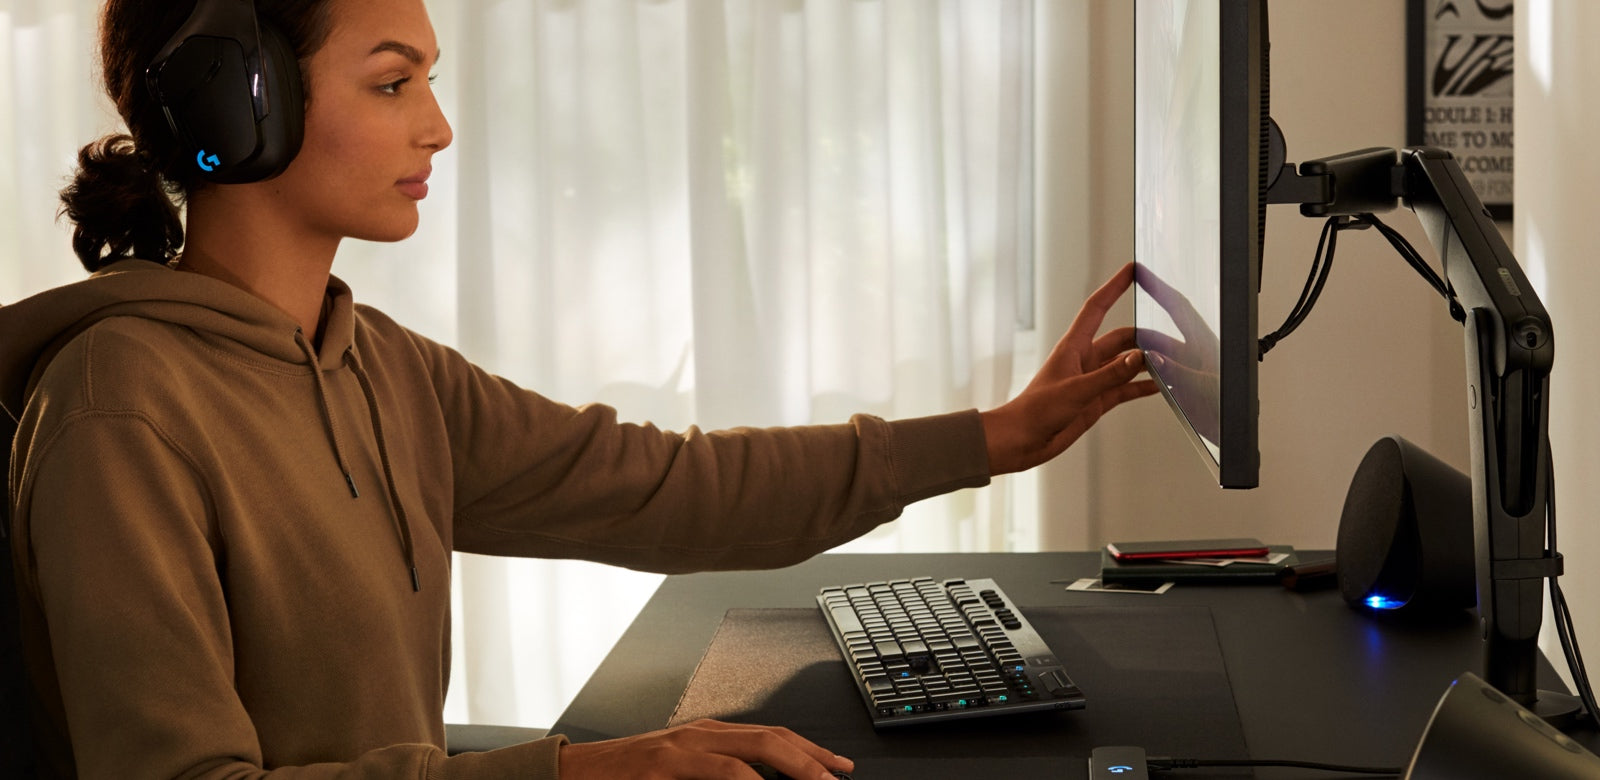 Una donna con una felpa regola un monitor collocato su un braccio porta monitor Ollin. Sullo sfondo si vedono delle tende bianche.